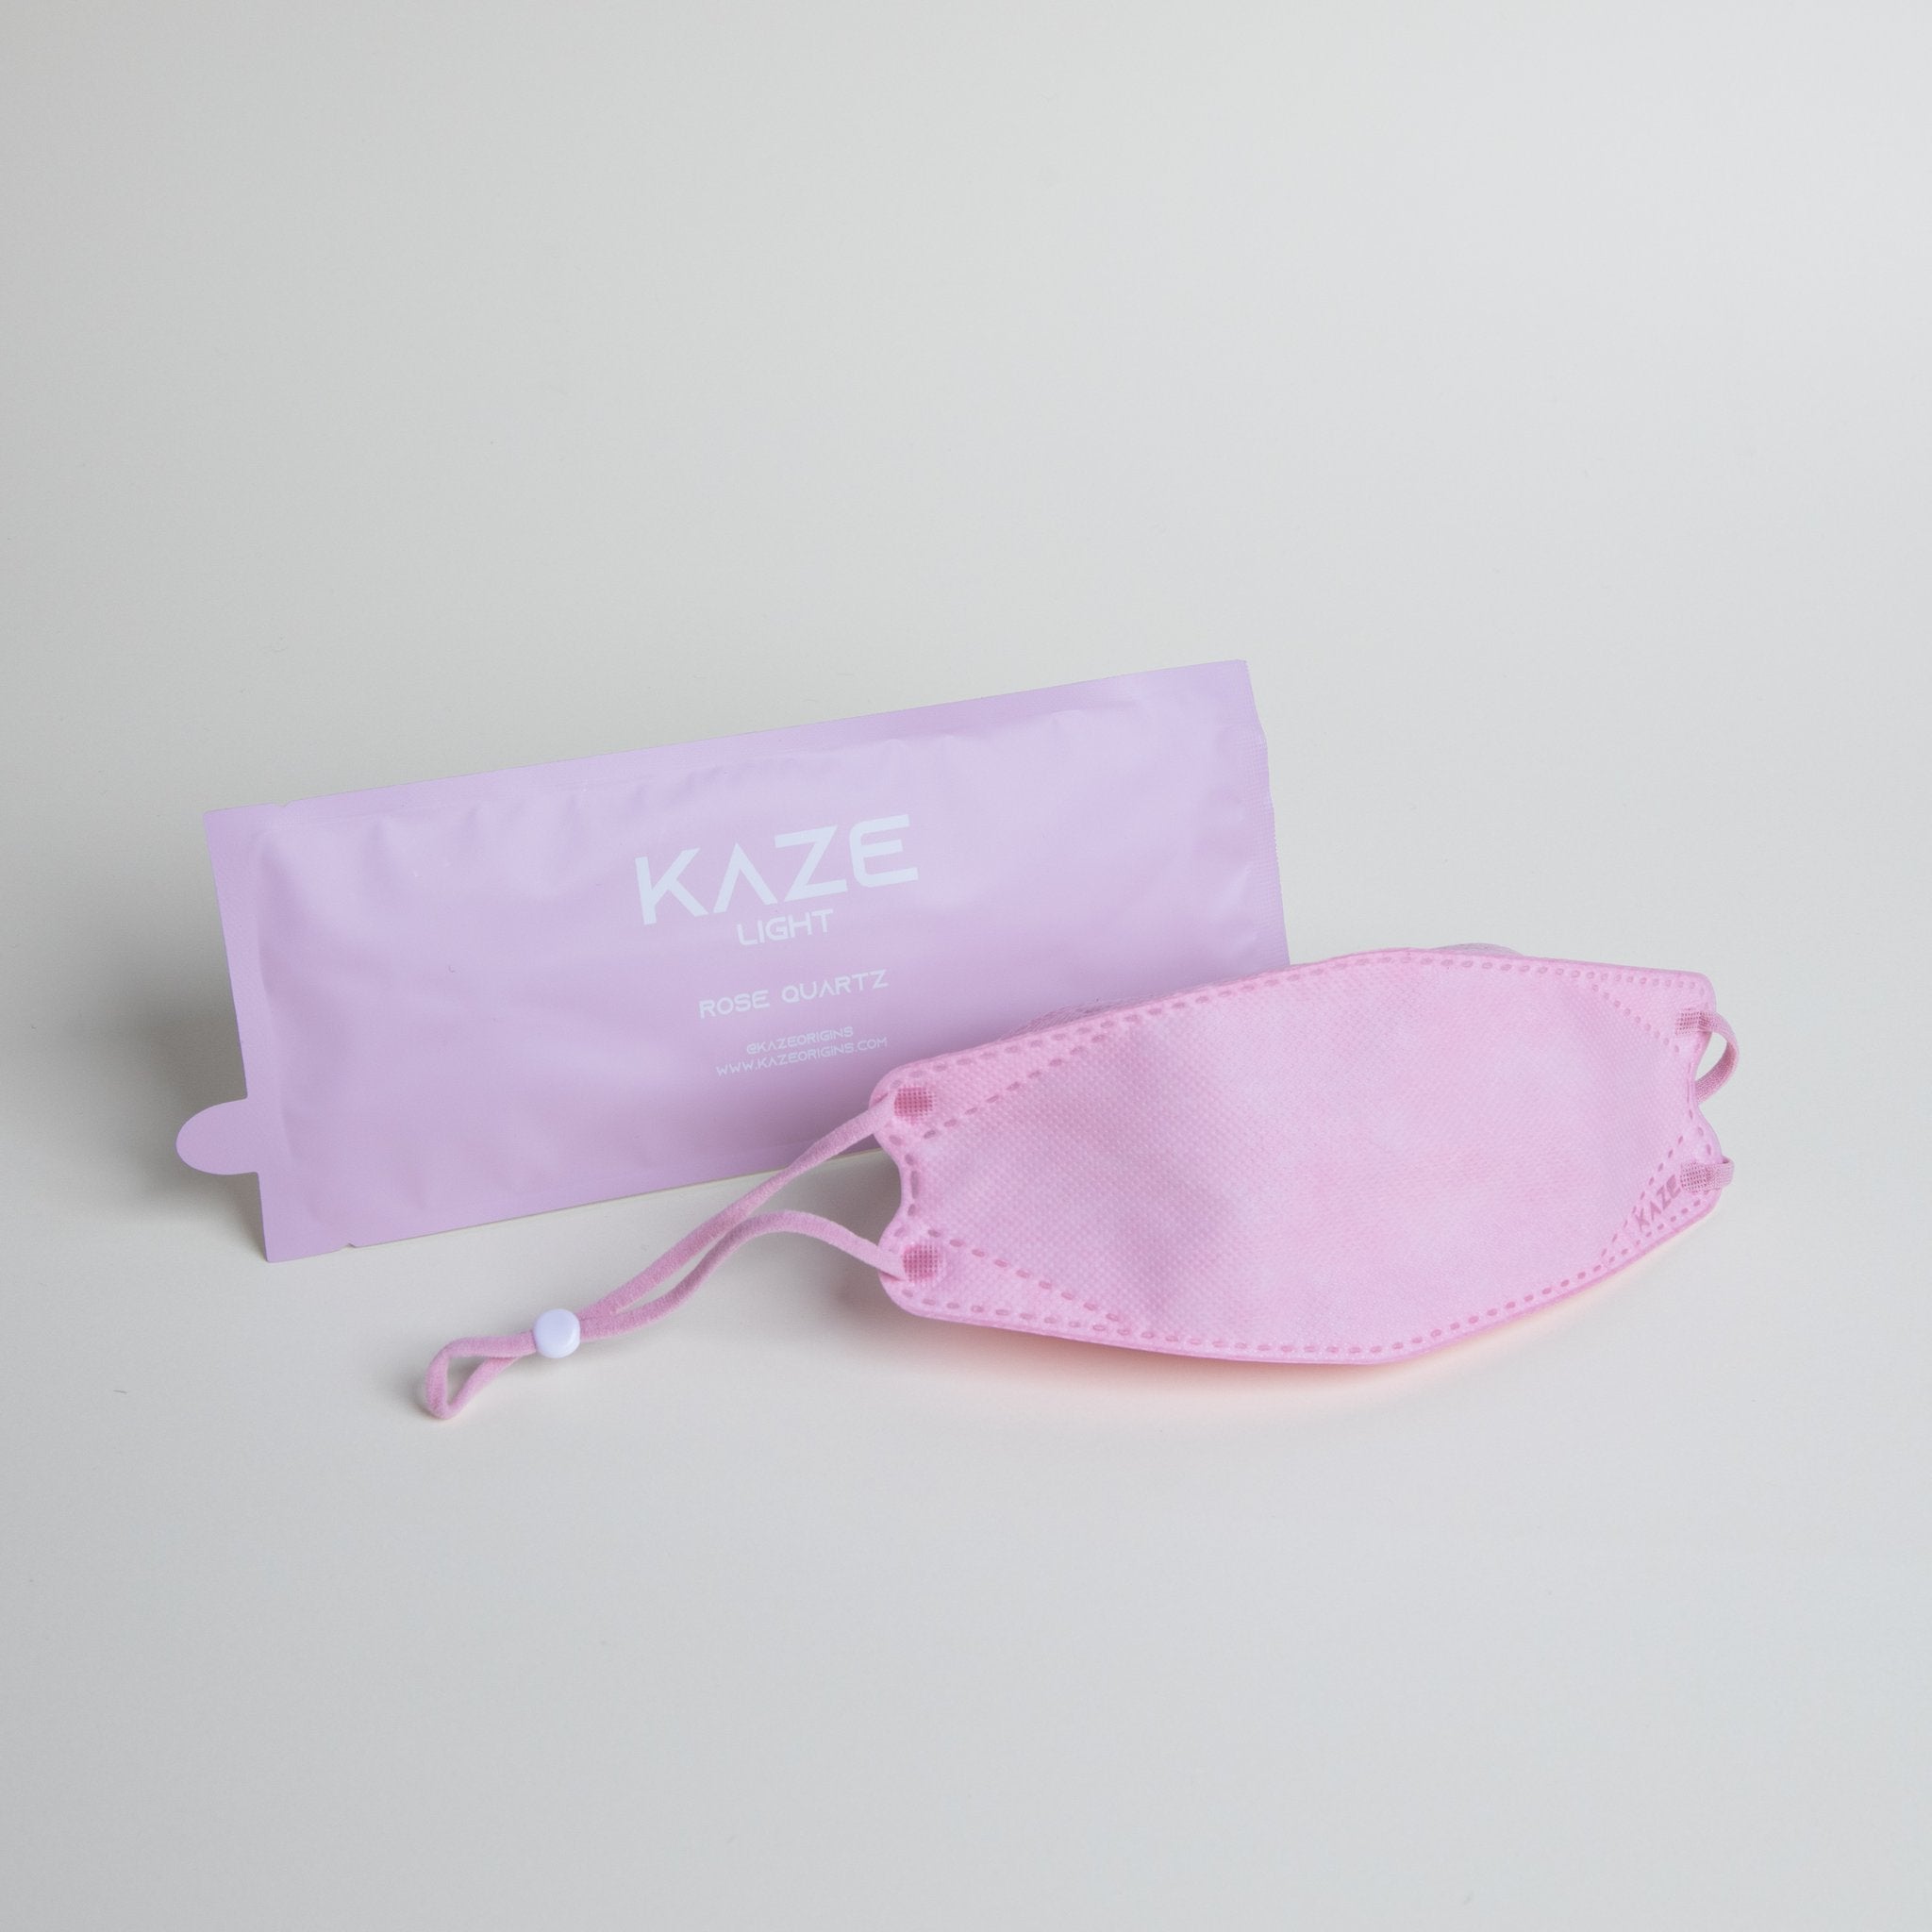 KAZE Masks - Light Vogue Series